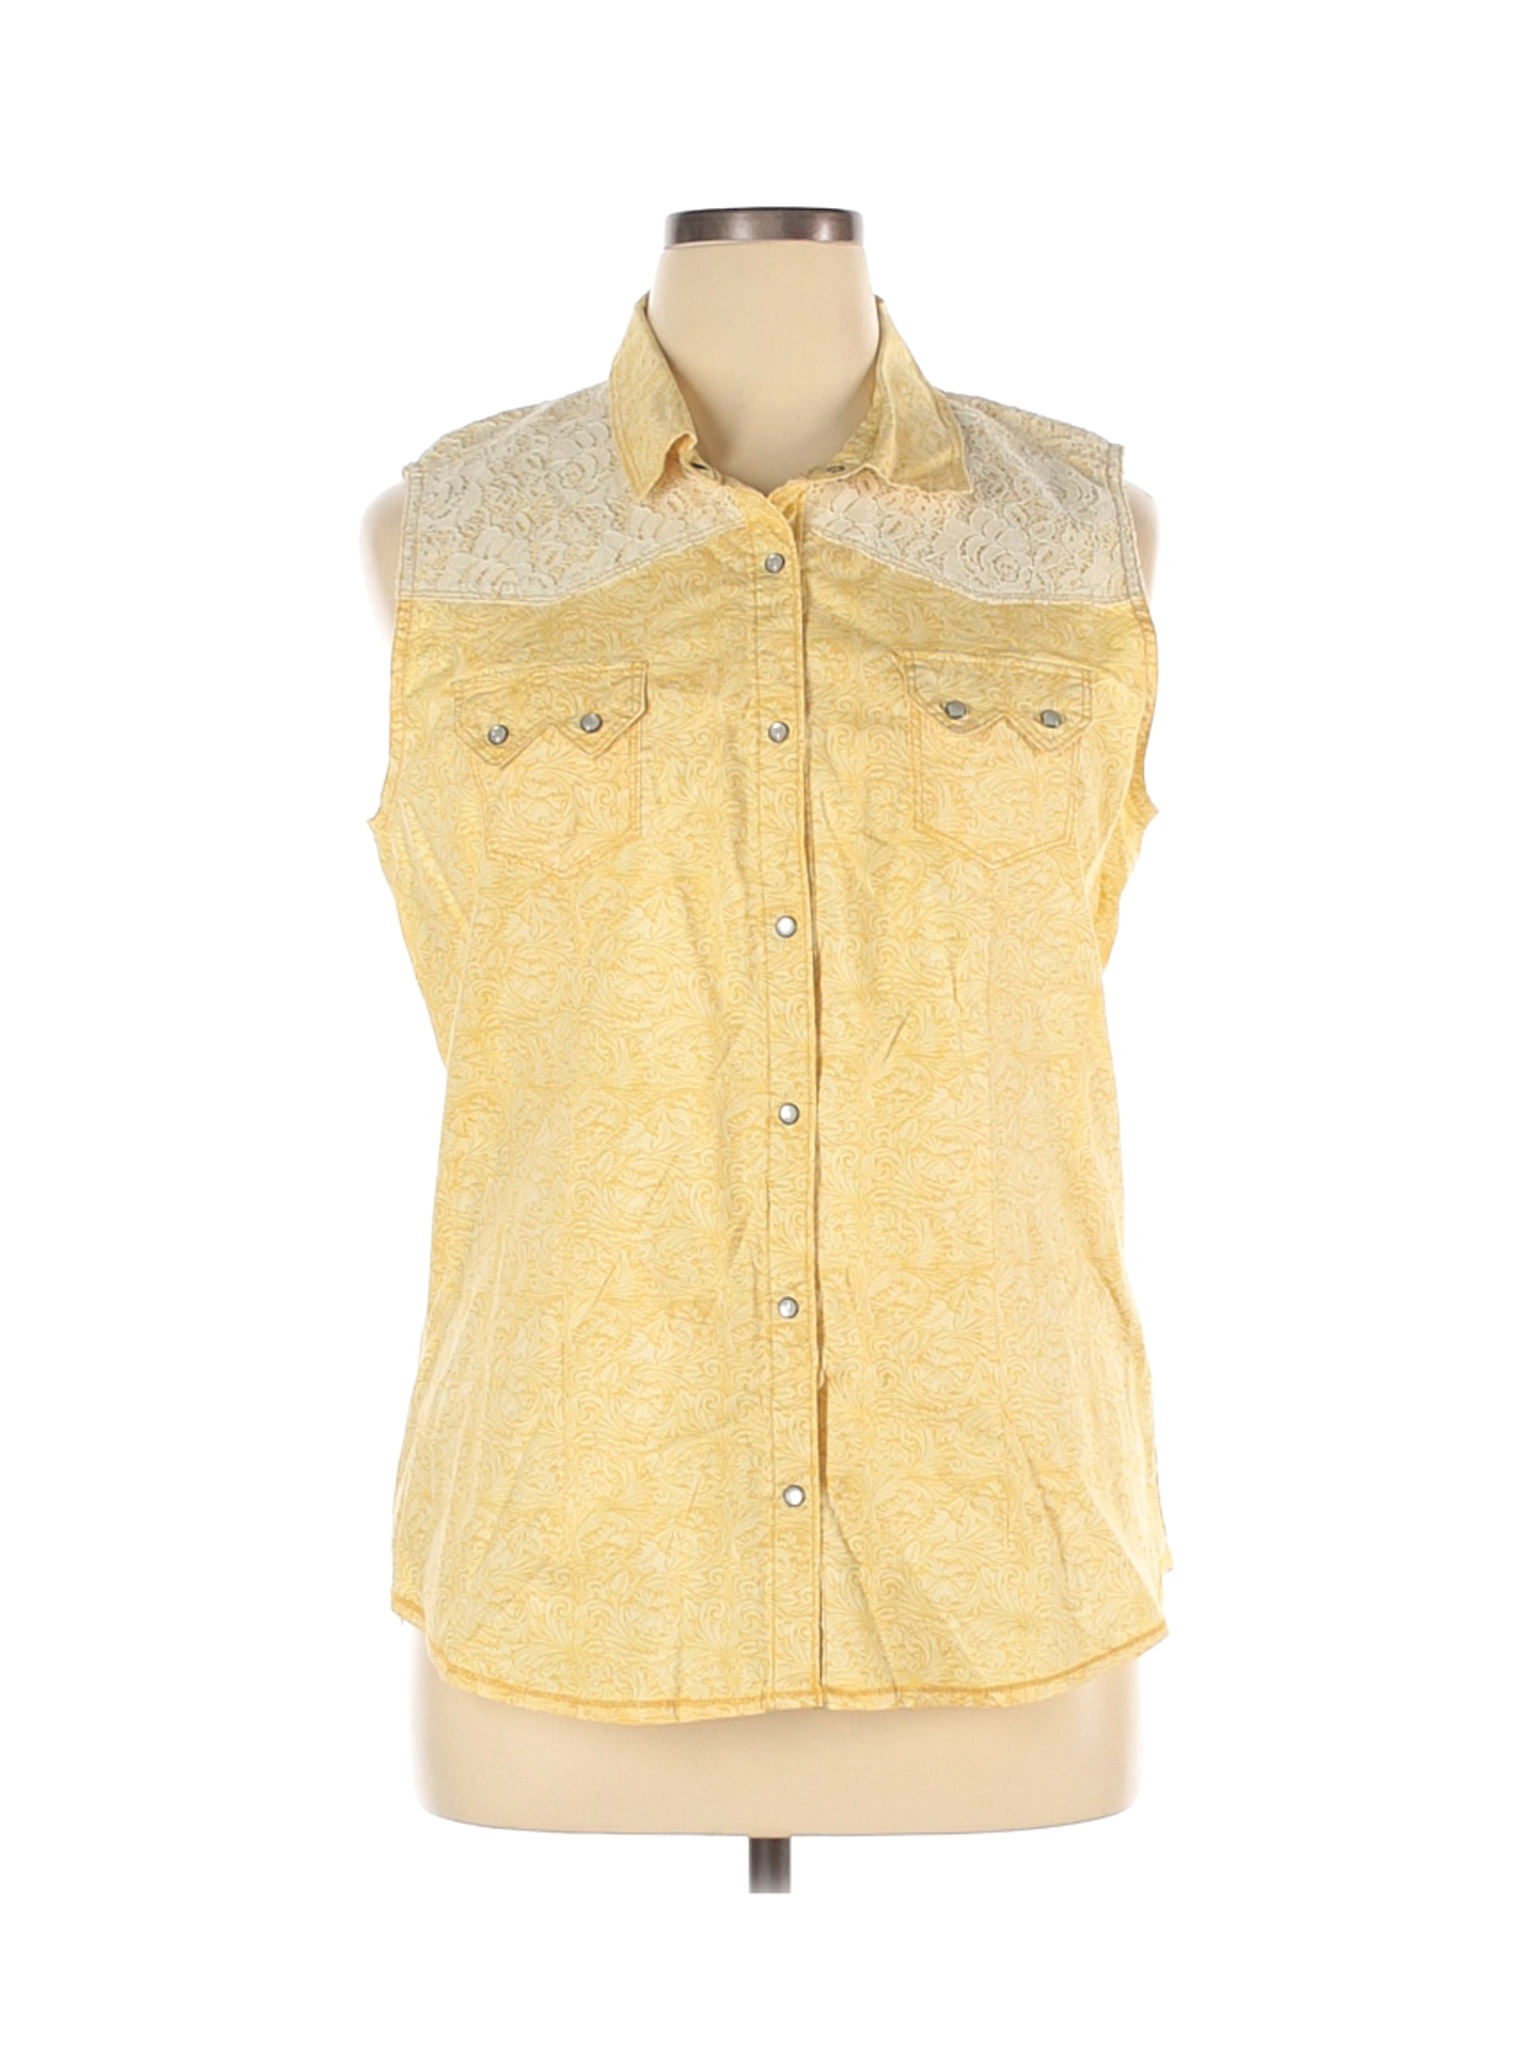 Assorted Brands Women Yellow Sleeveless Button-Down Shirt XL | eBay